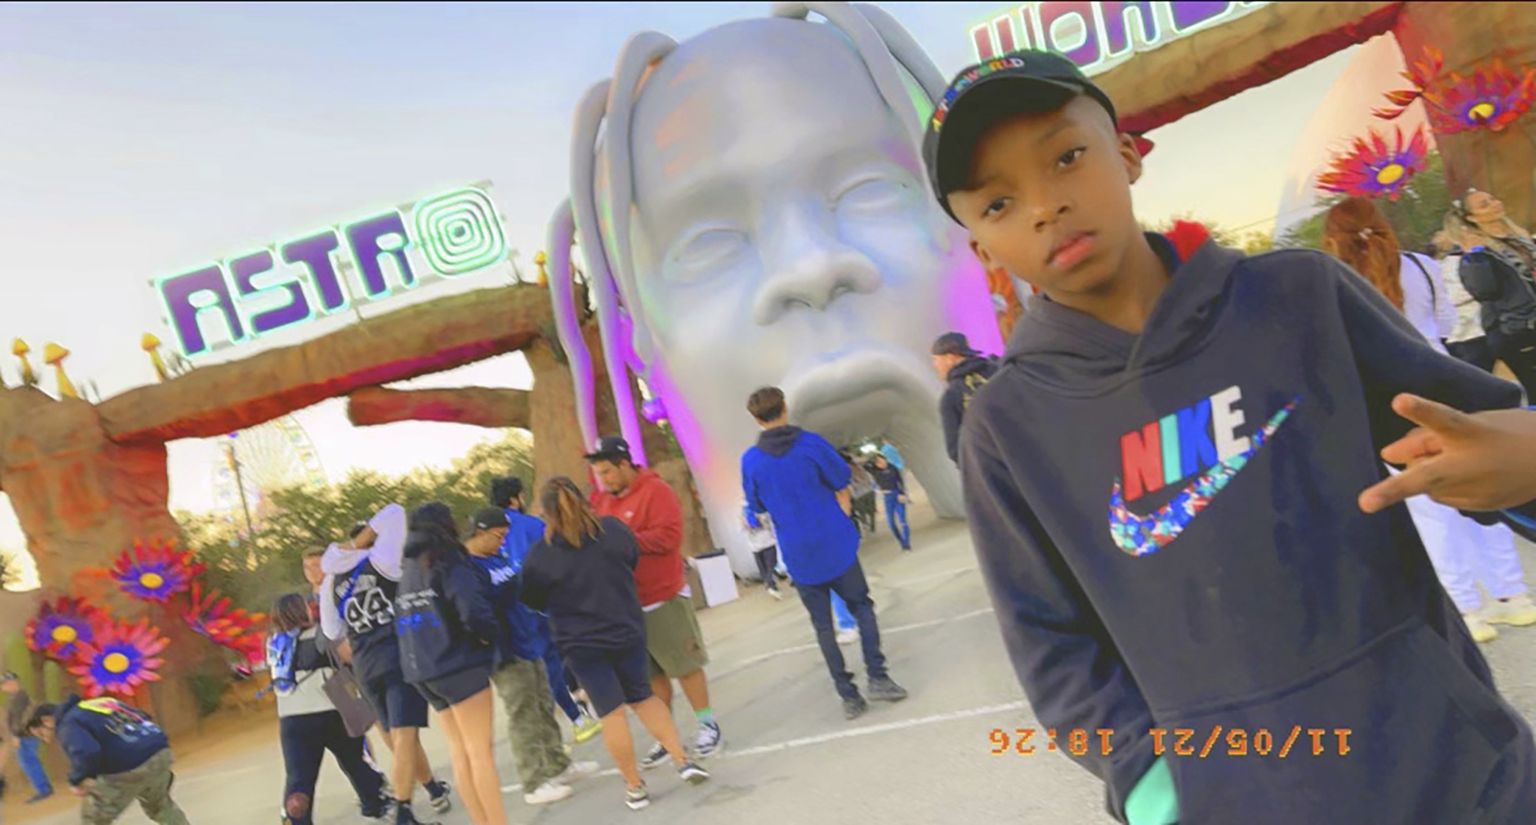 Üheksa-aastane Ezra Blount poseerimas 5. novembril Texases Houstonis Astroworldi muusikafestivali väravas. Poiss ja ta isa läksid kuulama räppar Travis Scotti kontserti. Poiss suri, isa sai vigastada